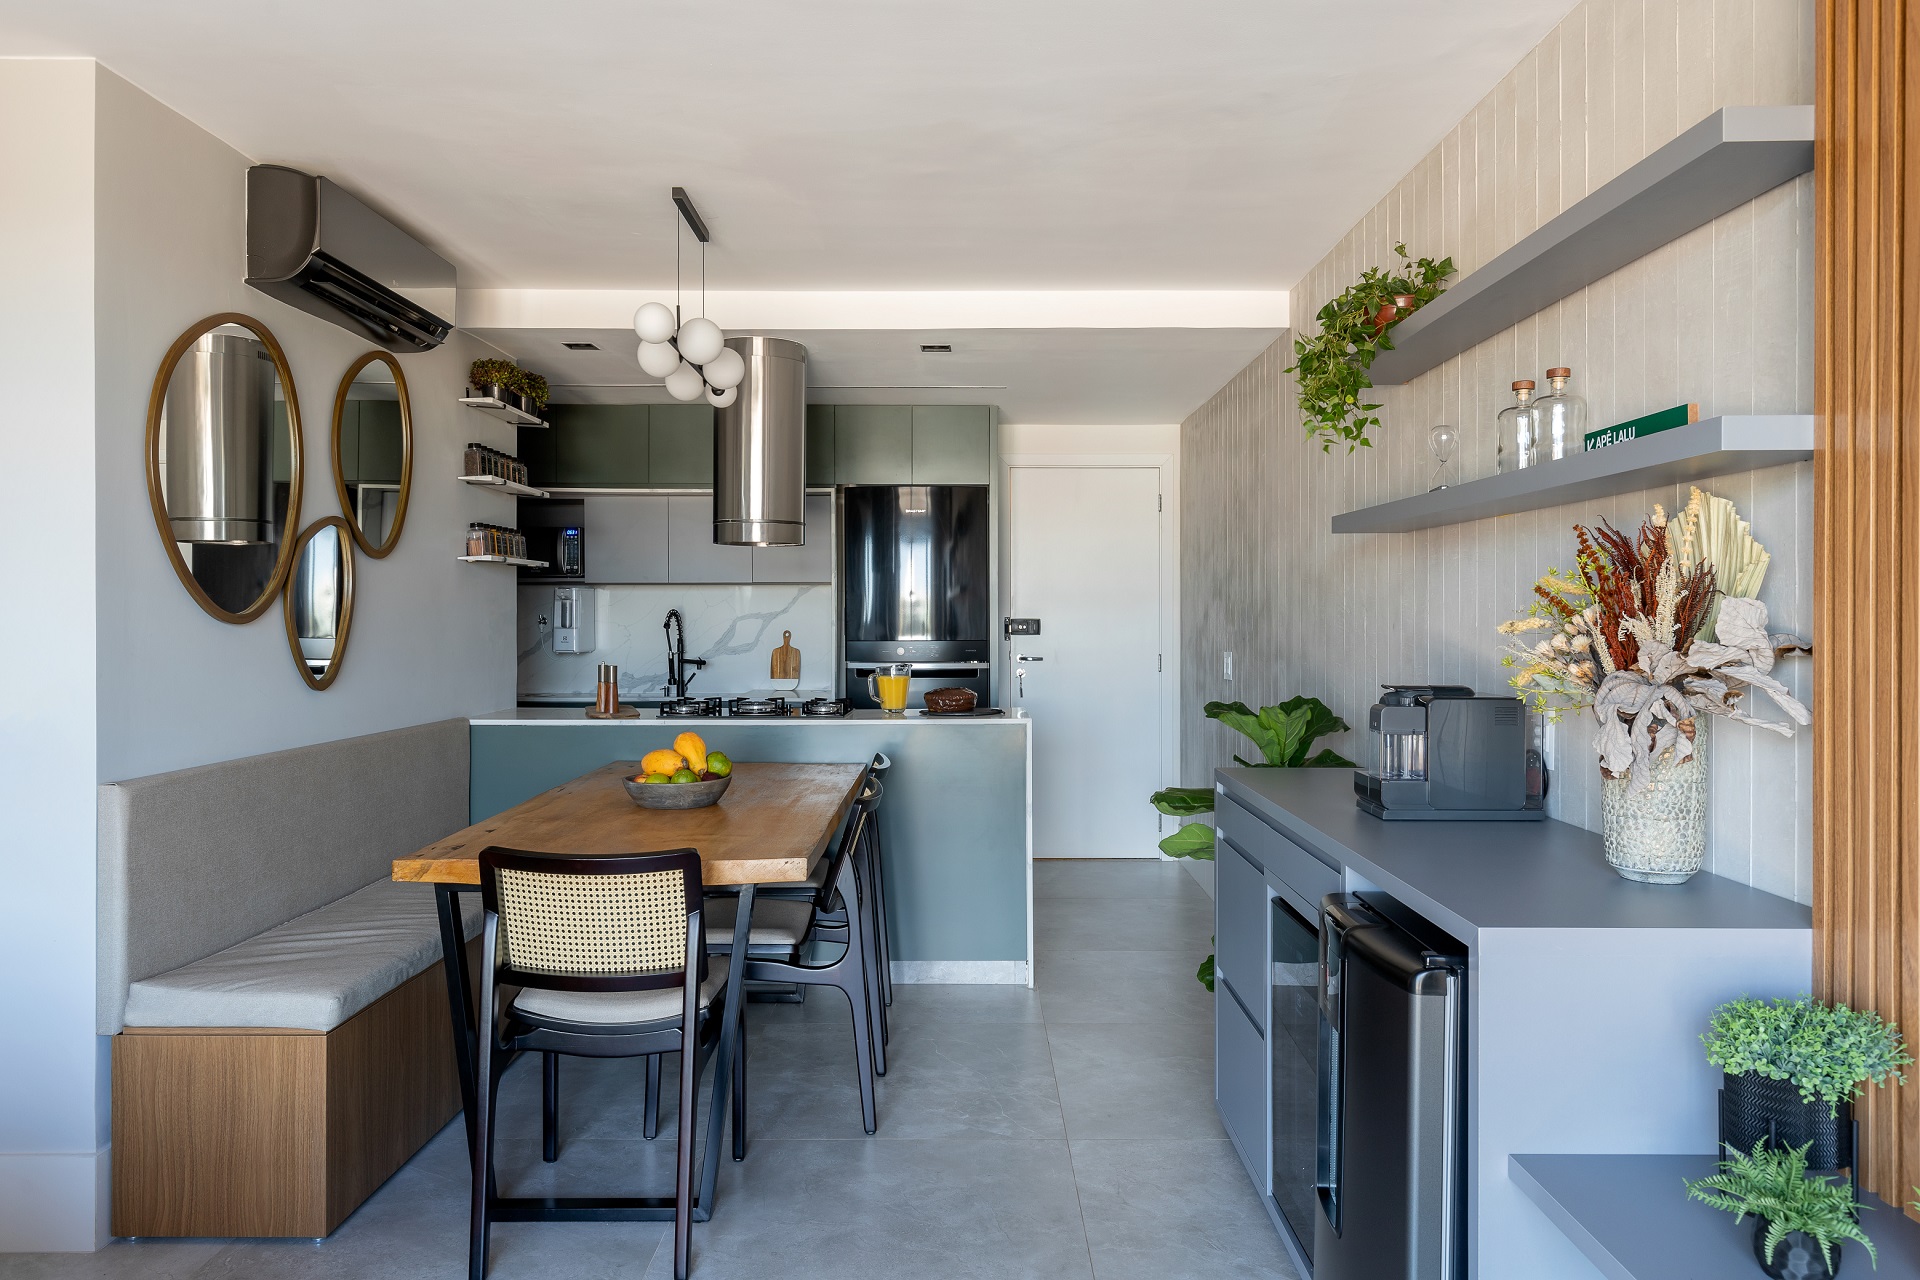 Sala e cozinha integradas em apartamento com tons neutros que mistura estilos decorativos